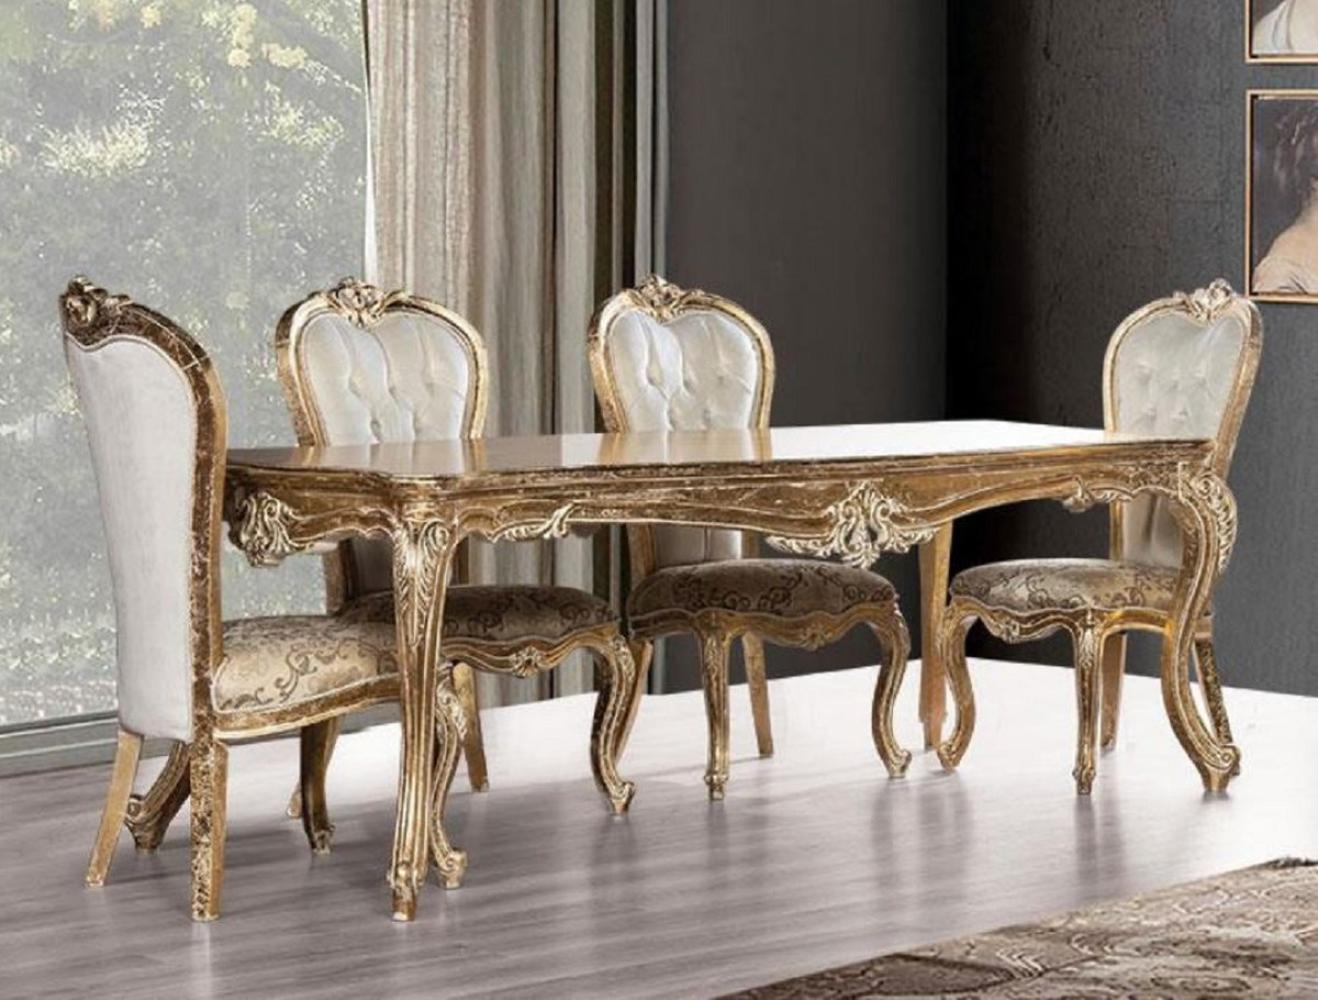 Casa Padrino Luxus Barock Esszimmer Set Weiß / Gold / Antik Gold - 1 Barock Esstisch & 6 Barock Esszimmerstühle - Esszimmer Möbel im Barockstil - Edel & Prunkvoll Bild 1